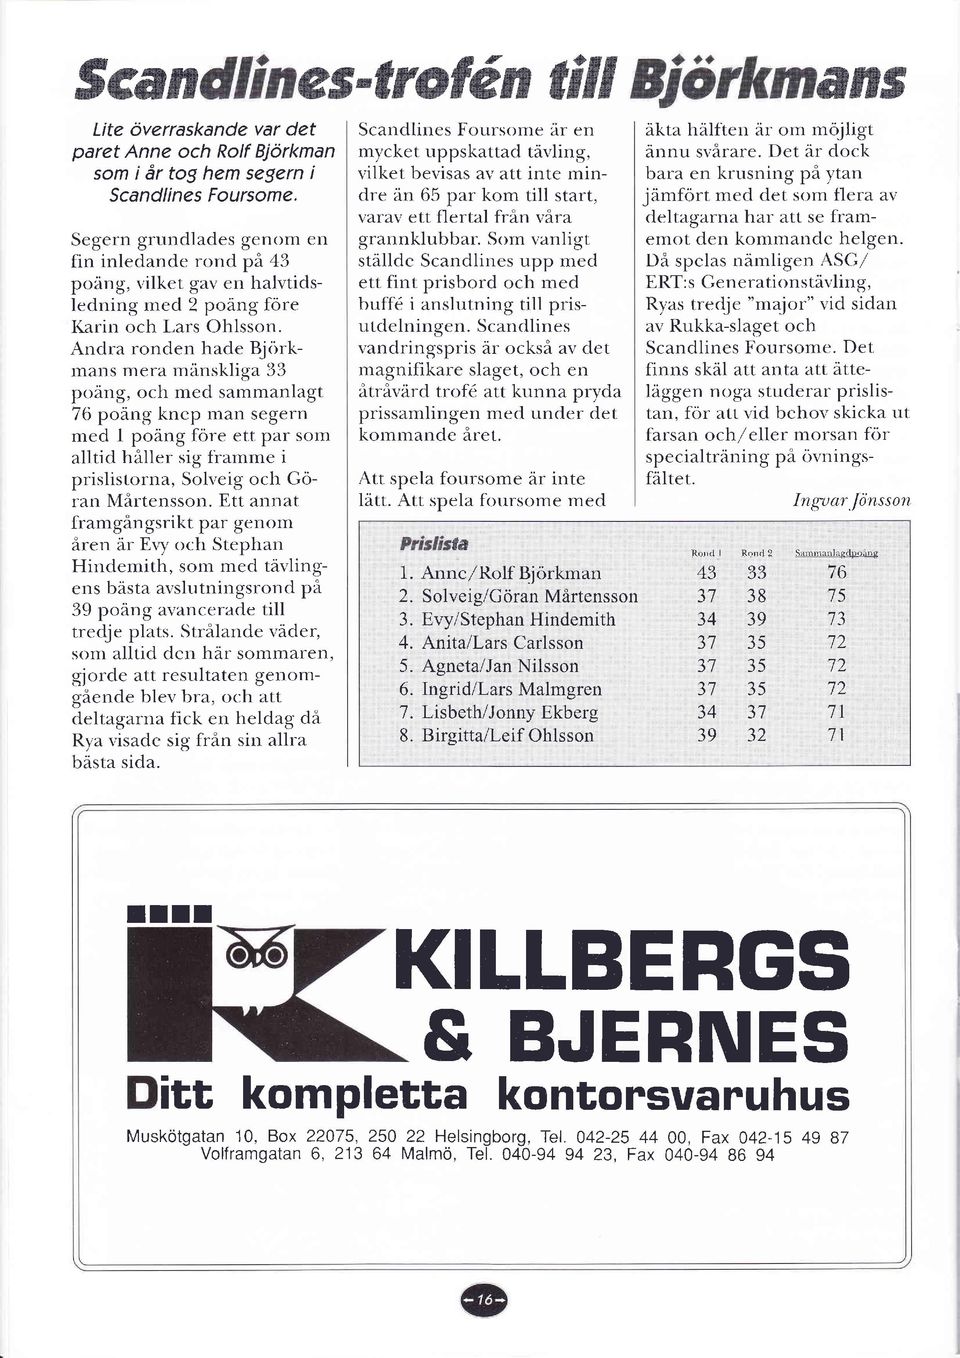 Andra ronden hade Björkmans mera mänskliga 33 poäng, och med sammanlagt 76 poåne knep man segern med I poäng före ett par som alltid håller sig framme i prislistorrta,, Solveig och Göran Mårtensson.